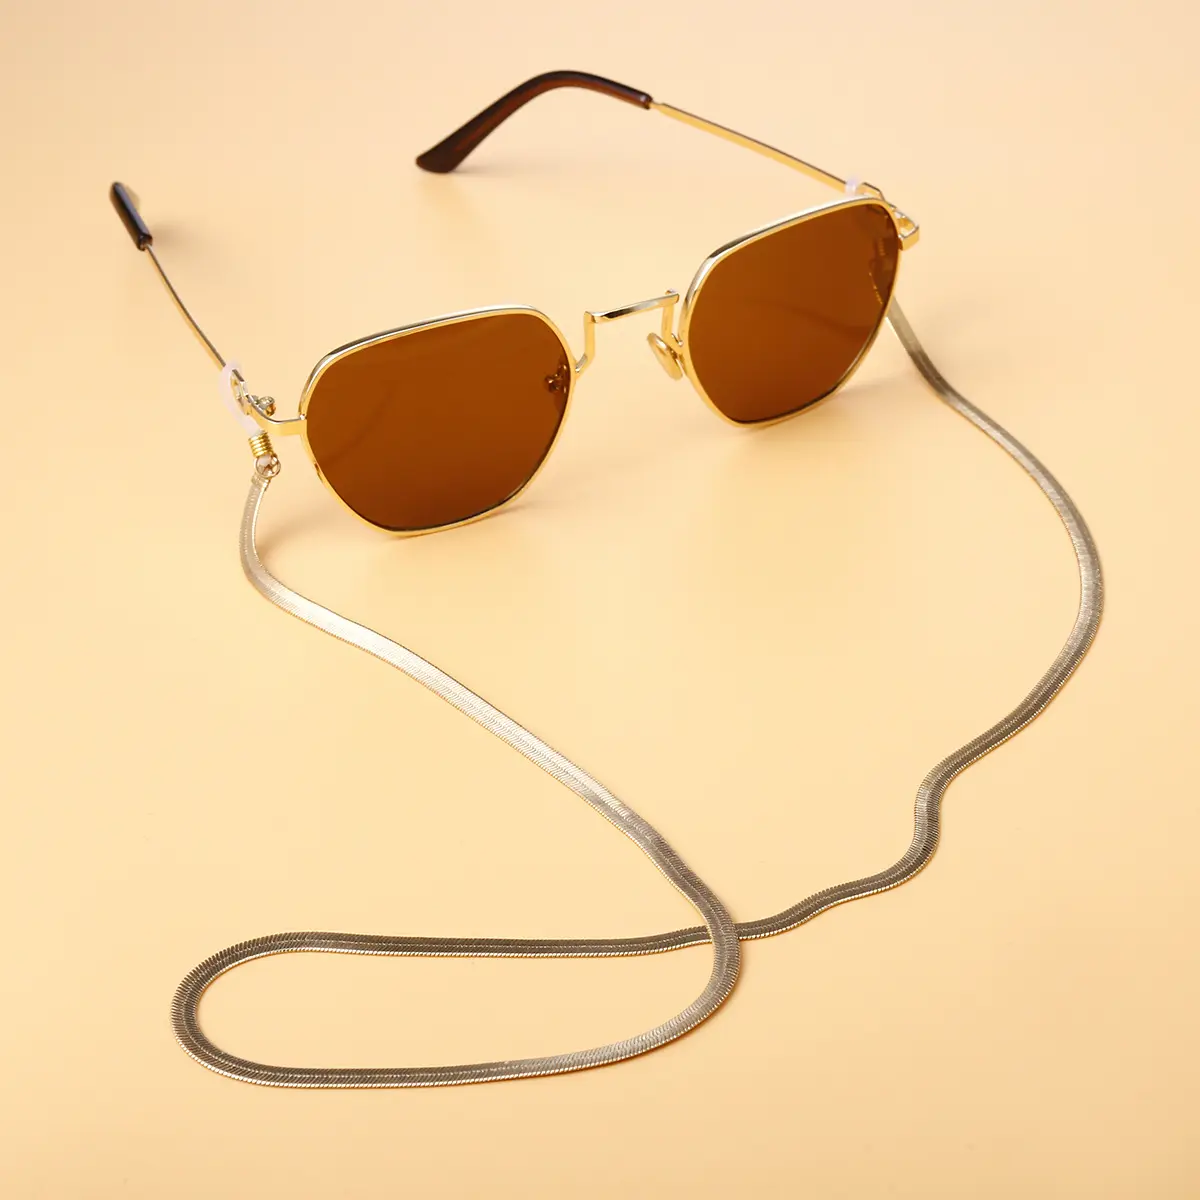 2020 새로운 패션 안경 선글라스 안경 빈티지 체인 홀더 코드 끈 목걸이 골드 실버 안경 체인 홀더